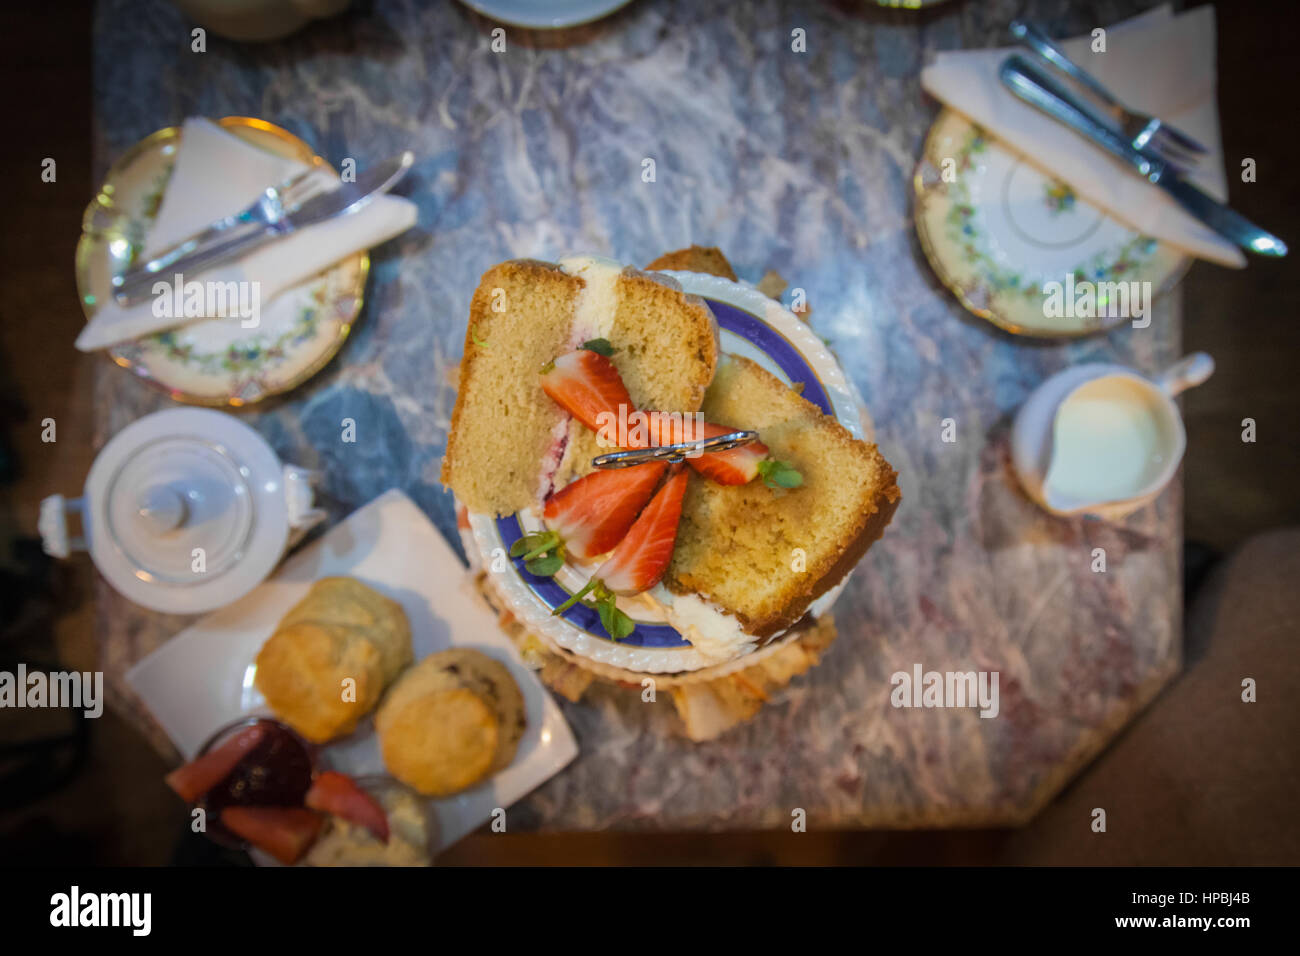 Tè pomeridiano. Un overhead immagine della torta decorata con fragole, focaccine, latte, piatti e posate su un tavolo di marmo. Foto Stock